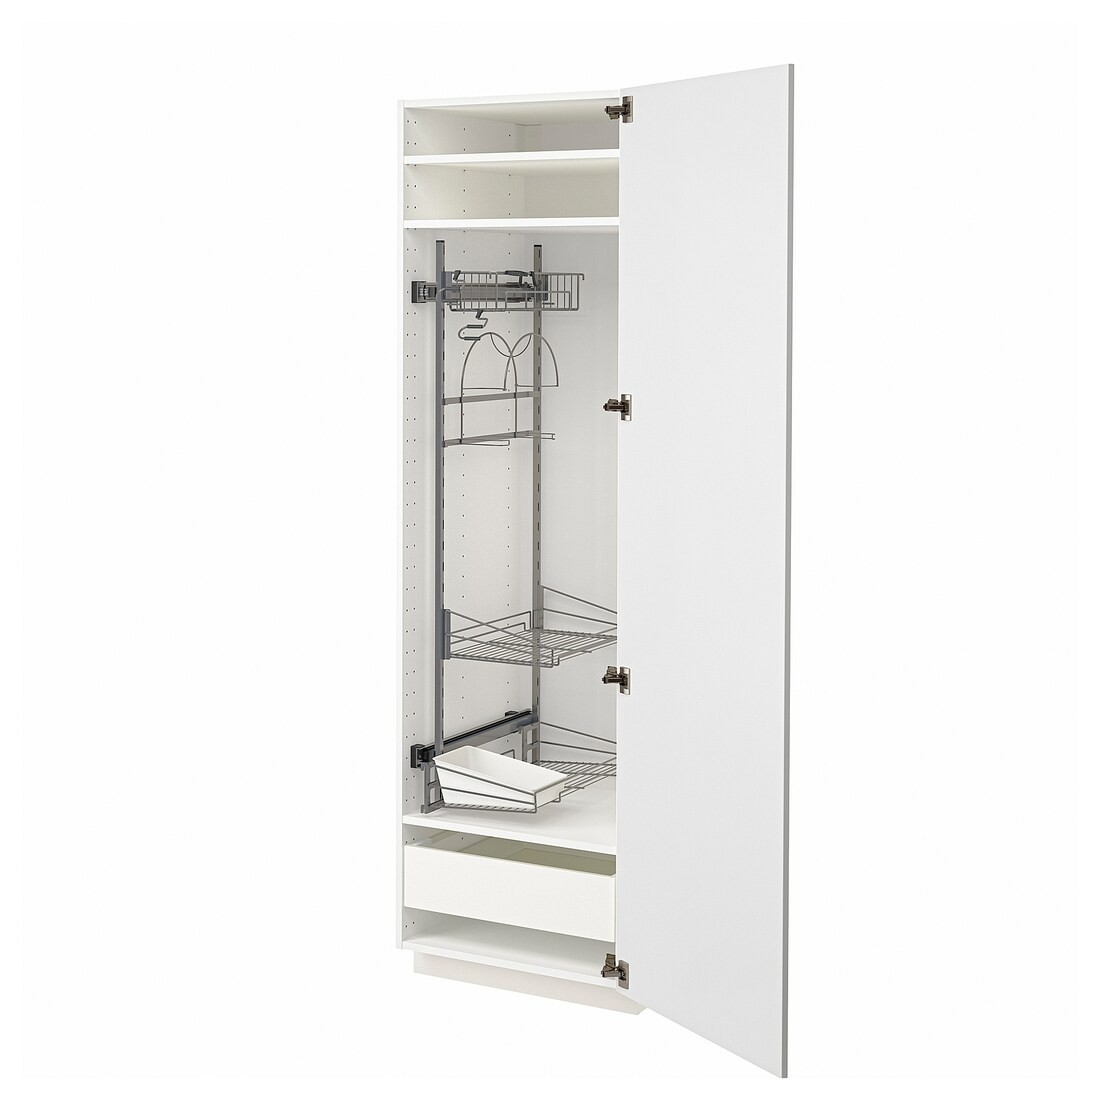 METOD МЕТОД / MAXIMERA МАКСИМЕРА Высокий шкаф с отделением для аксессуаров для уборки, белый / Stensund белый, 60x60x200 см